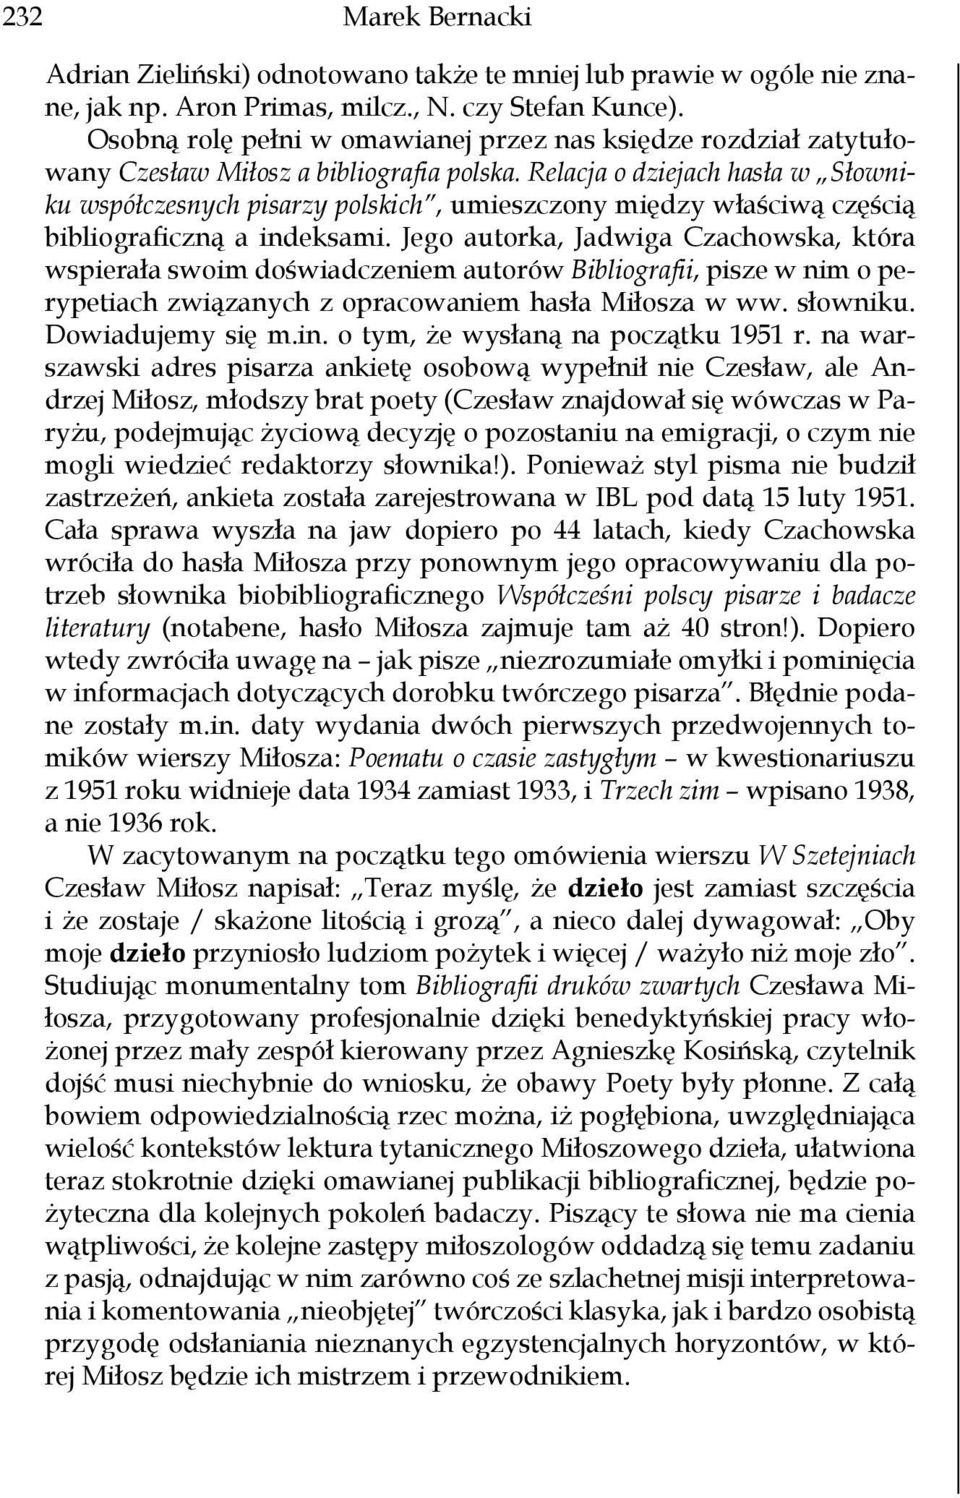 Relacja o dziejach hasła w Słowniku współczesnych pisarzy polskich, umieszczony między właściwą częścią bibliograficzną a indeksami.